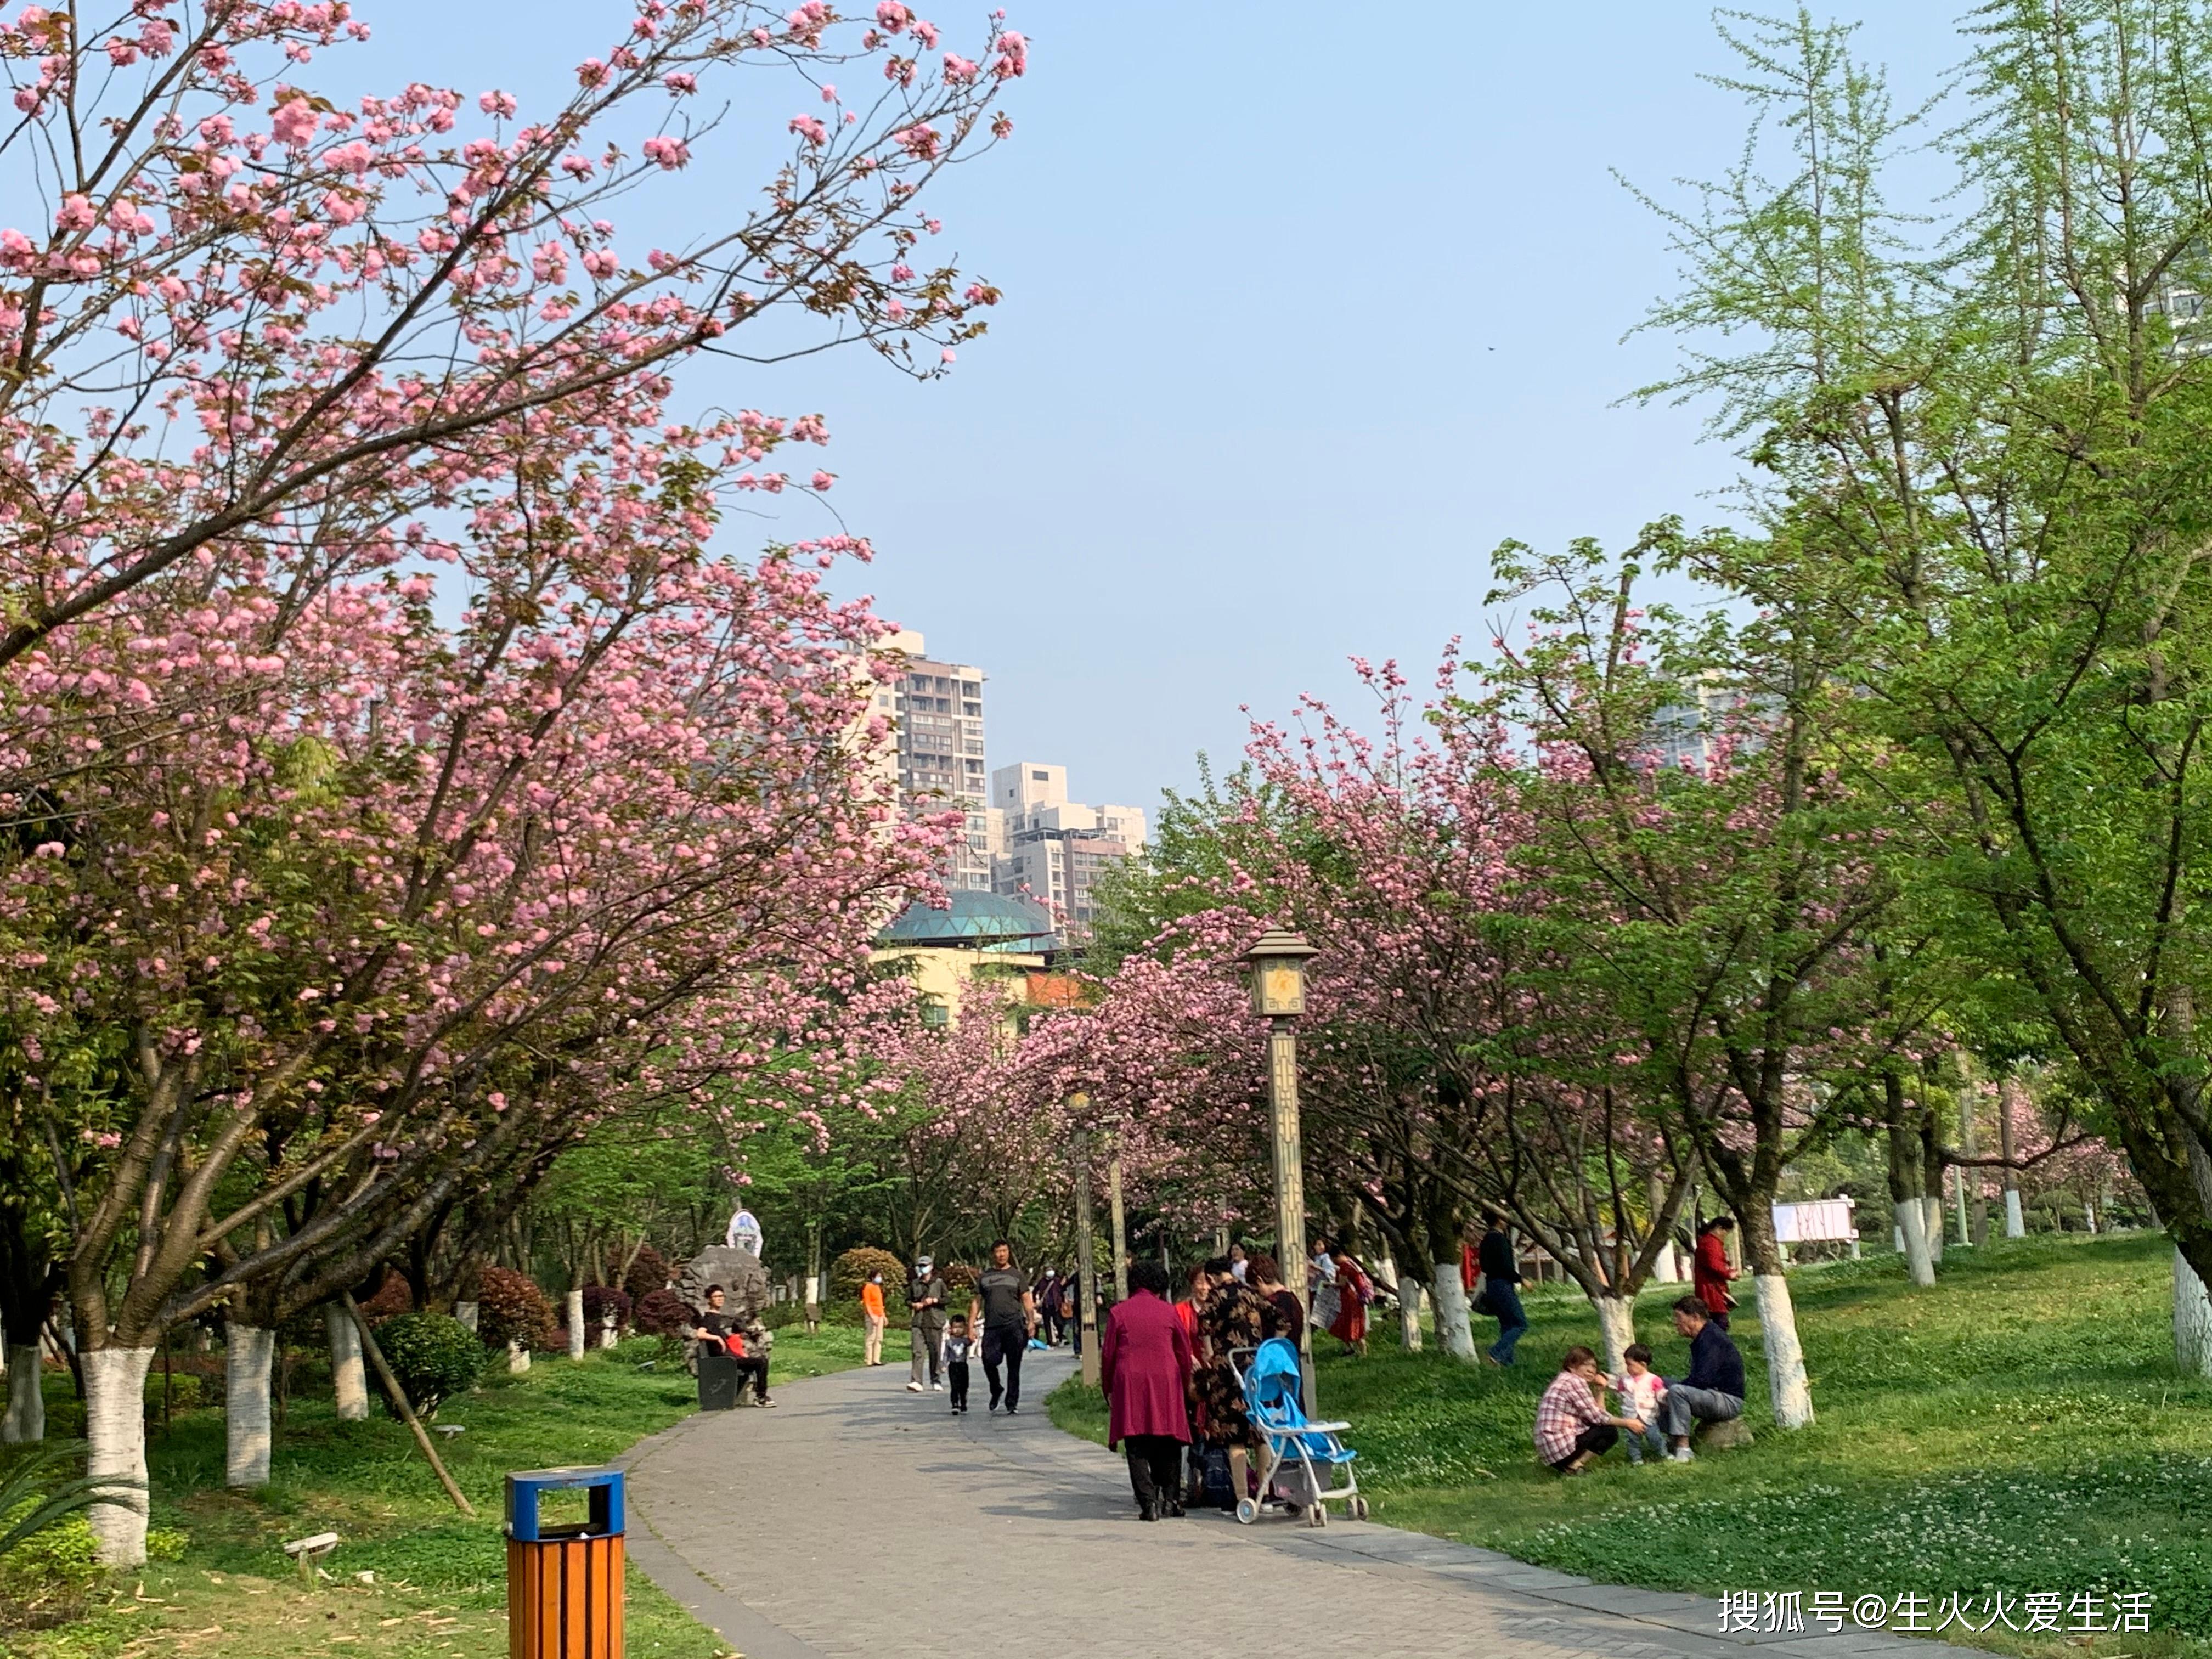 春天里的公园,人们探春赏花